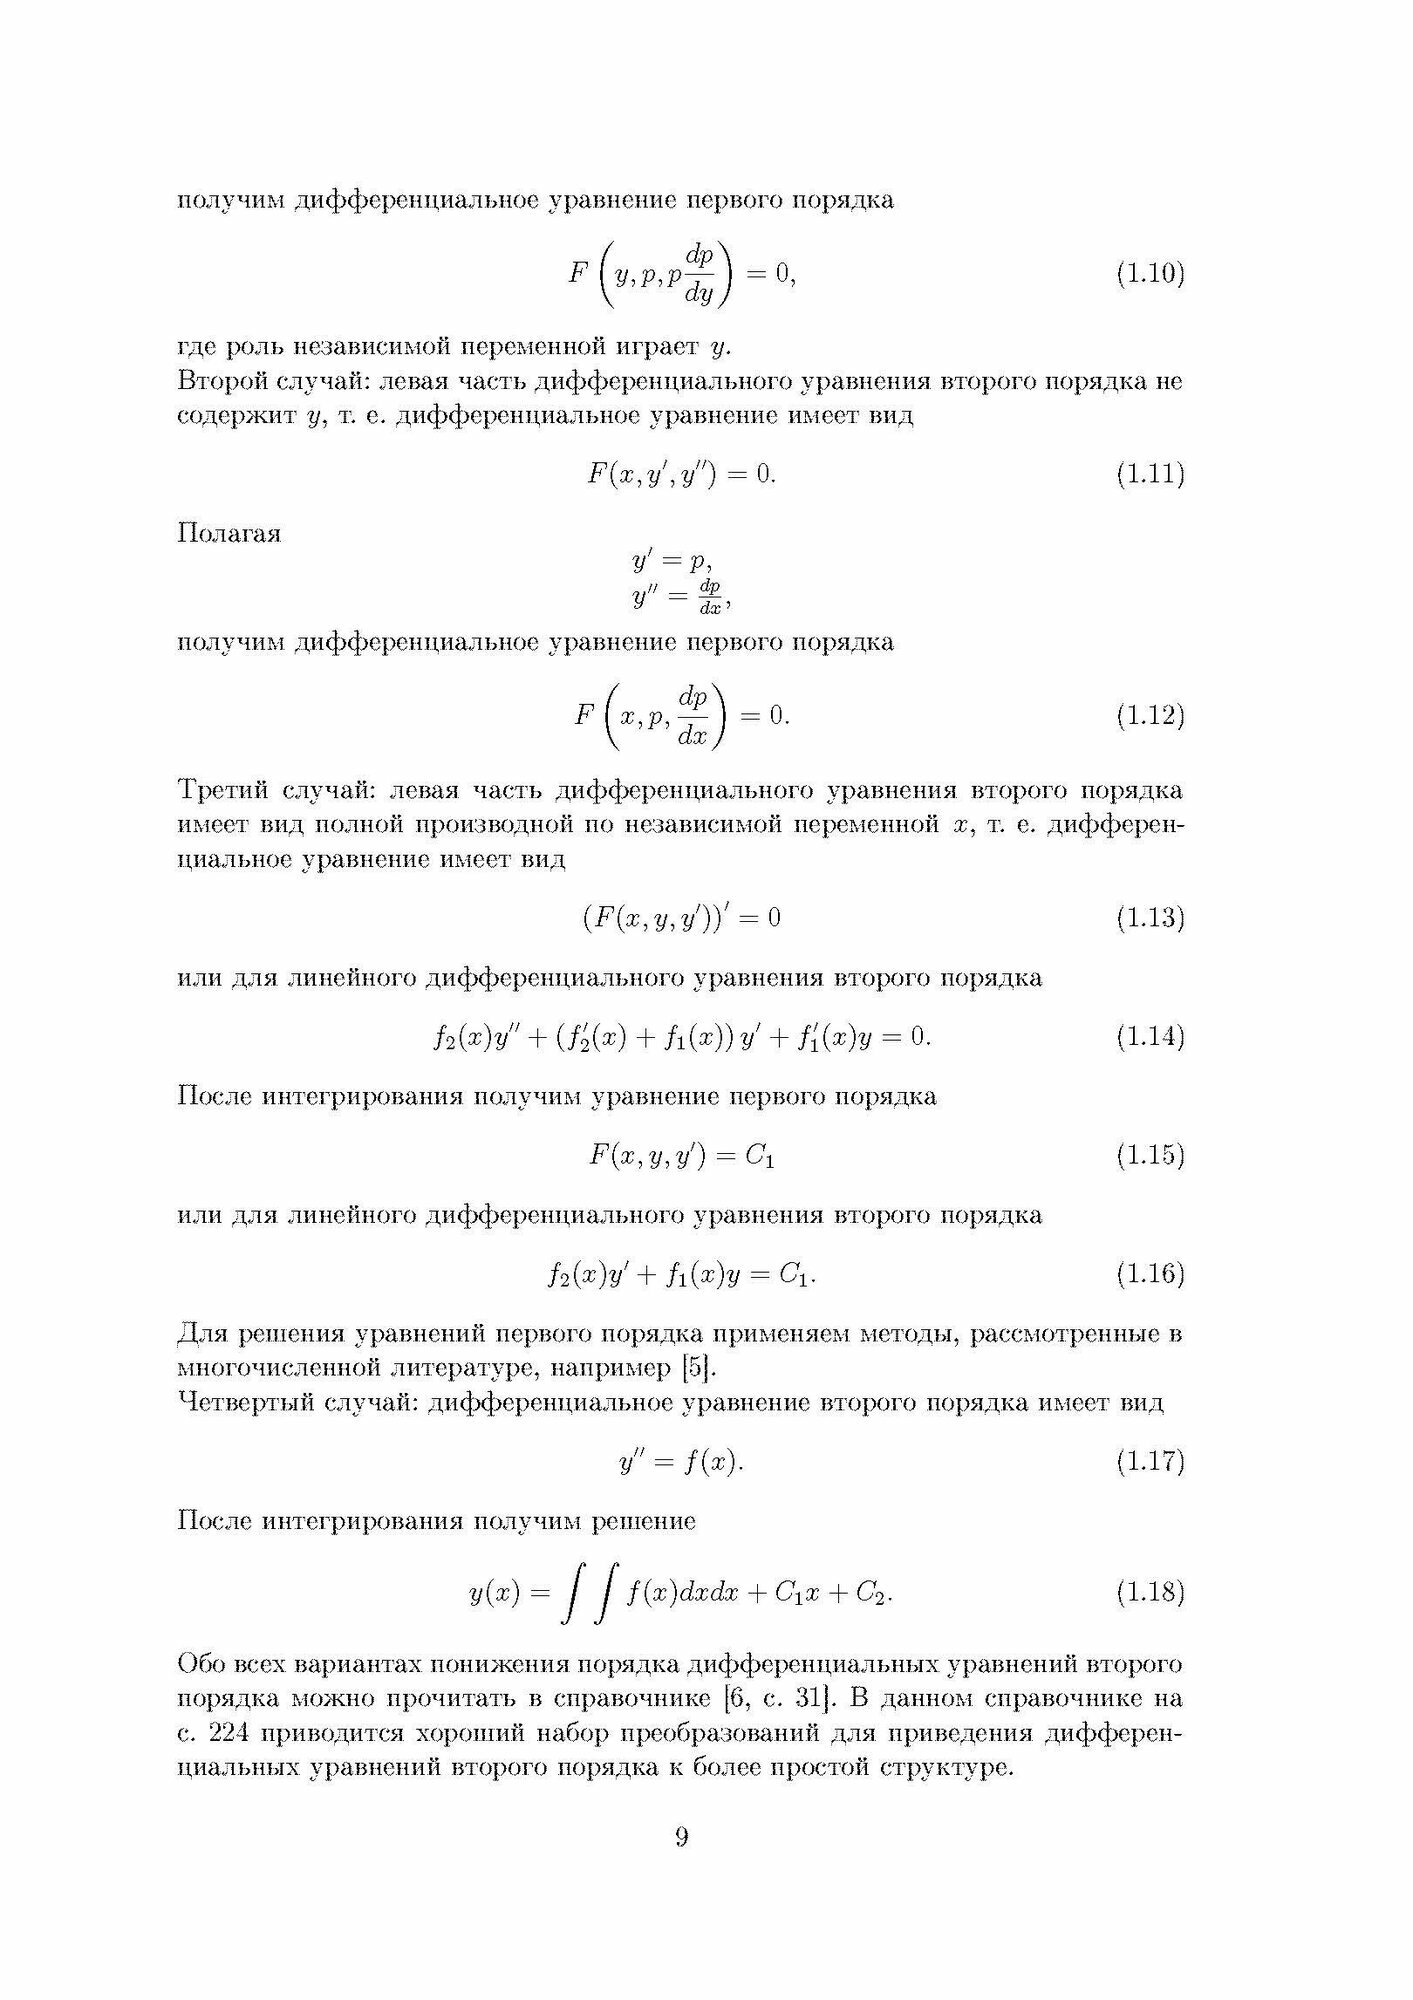 Дифференциальные уравнения второго порядка - фото №9